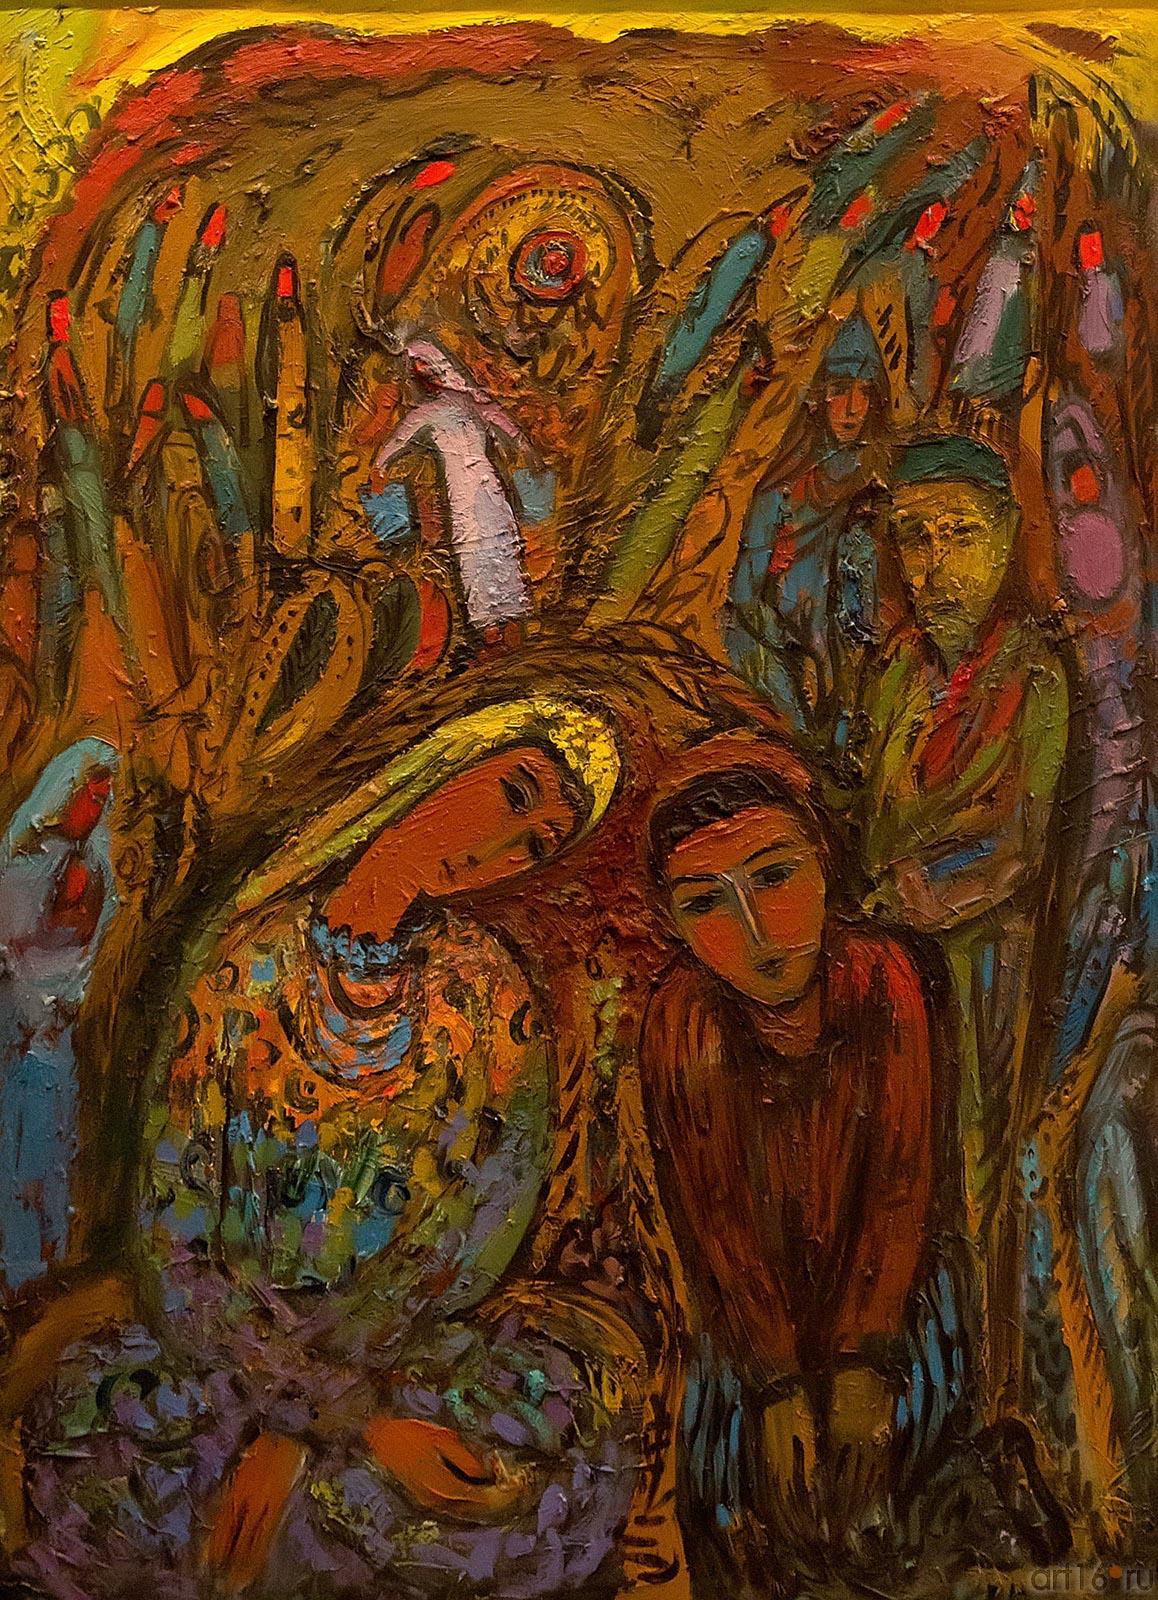 Хазиев Мадьяр Шарипович (1949 гр) ʺВечерняя сказкаʺ 100x70 холст; масло 2012г.::Галерея "Артэко". Выставка группы "Тамга"